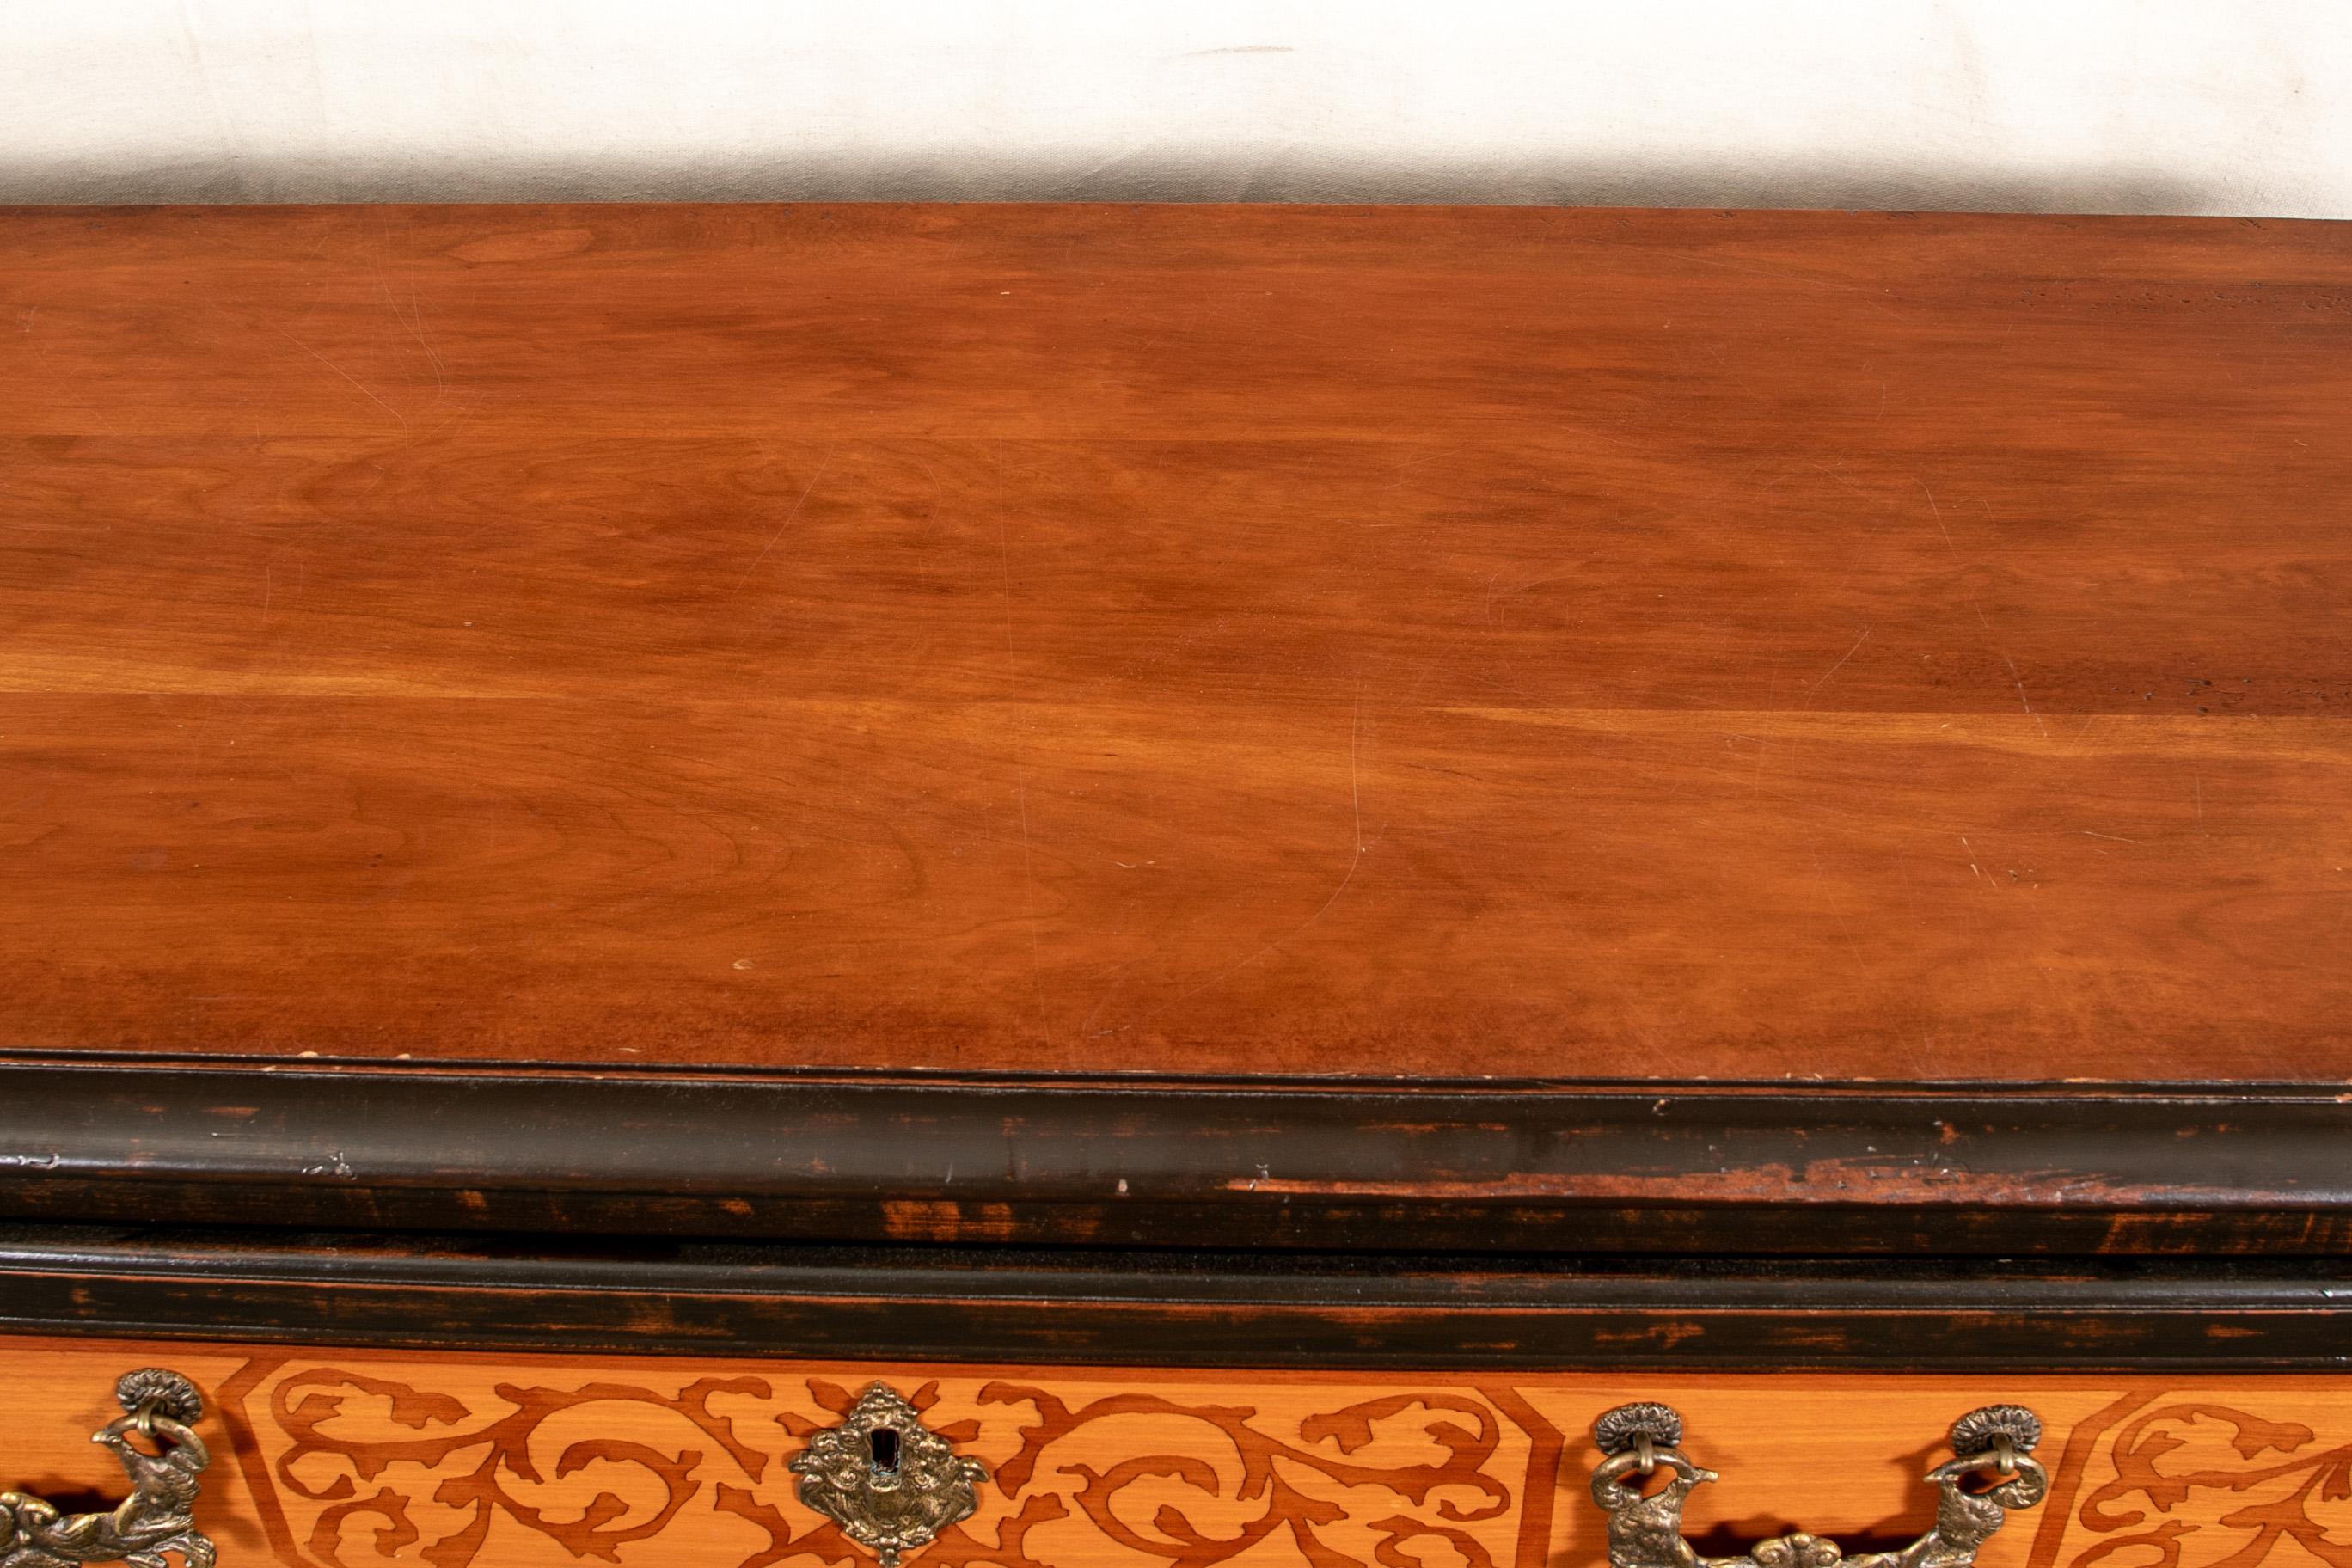 AM Contemporary distressed chest of three drawers, Kiefer, kontrastierende gebeizte Schablonen entlang der Schubladenfronten mit figuralen Messinggriffen und Wappenschildern, rechteckige Platte über drei Schubladen mit abgestuften Größen, gestützt